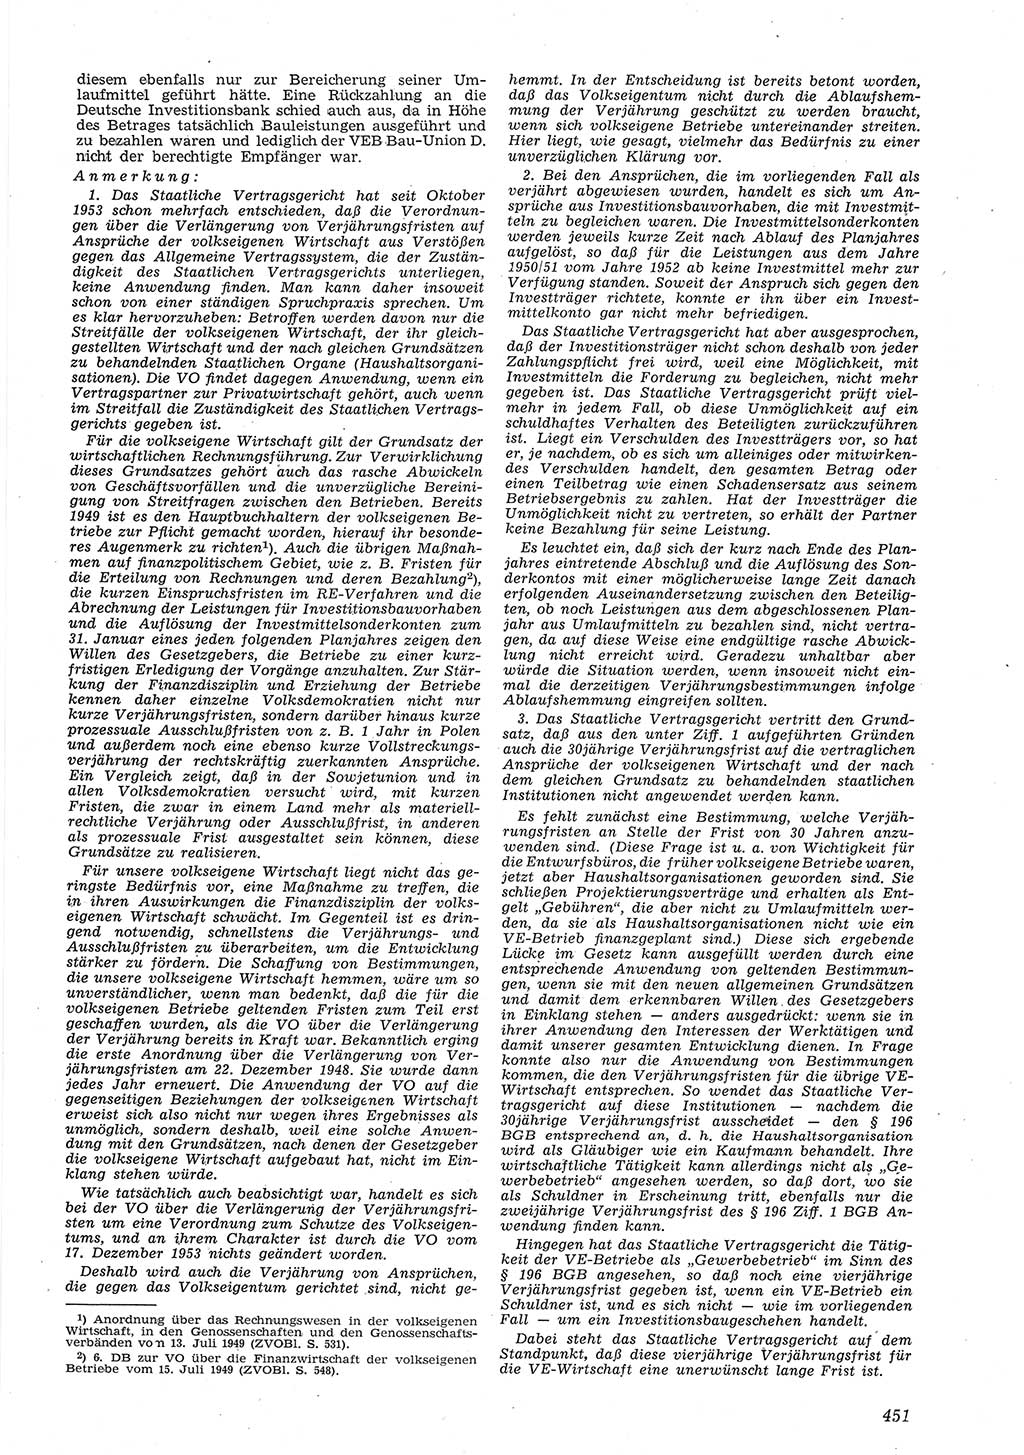 Neue Justiz (NJ), Zeitschrift für Recht und Rechtswissenschaft [Deutsche Demokratische Republik (DDR)], 8. Jahrgang 1954, Seite 451 (NJ DDR 1954, S. 451)